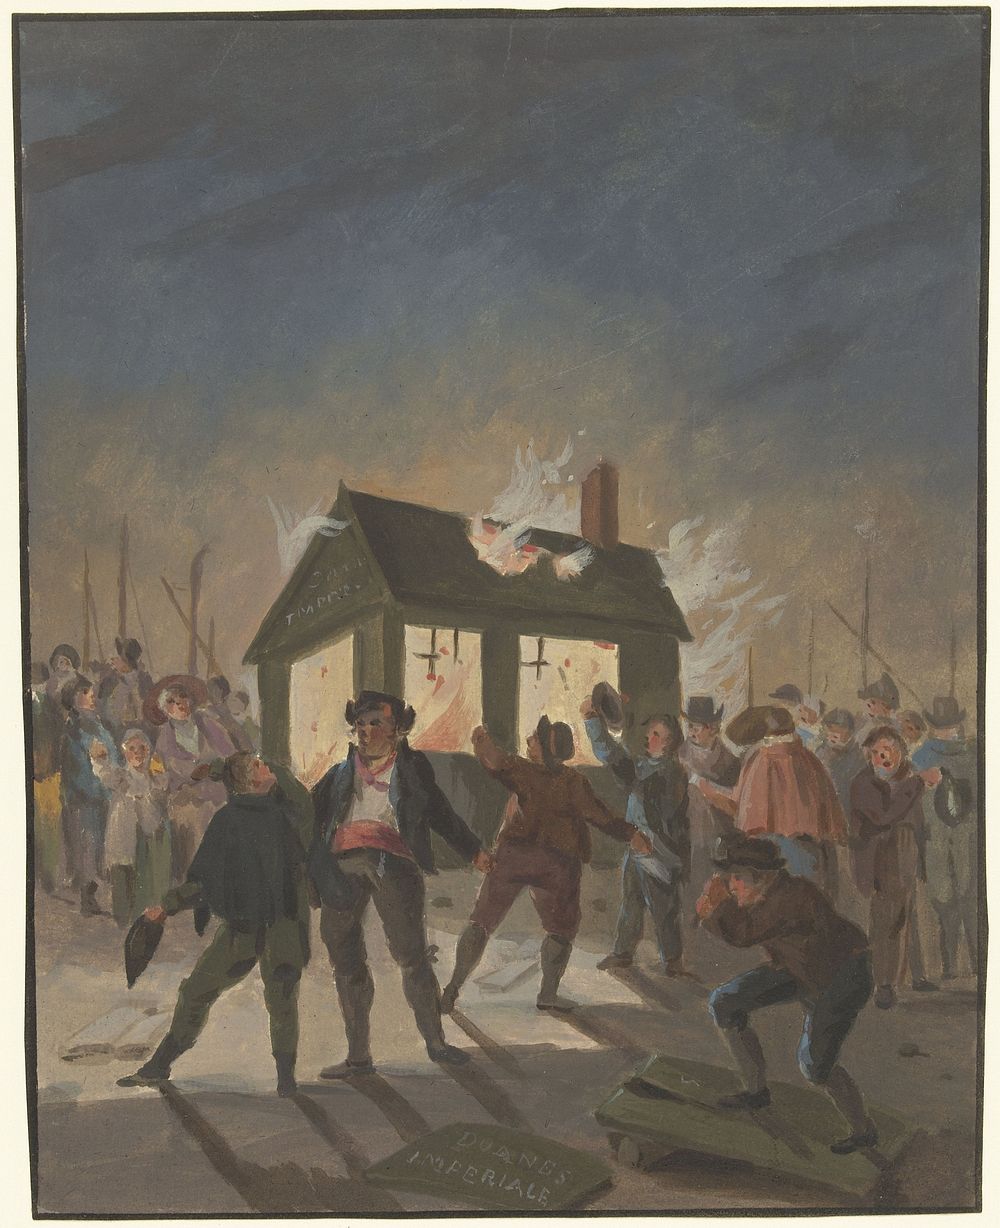 Het verbranden van de douanehuisjes in Amsterdam op 15 november 1813 (1813) by anonymous and Reinier Vinkeles I